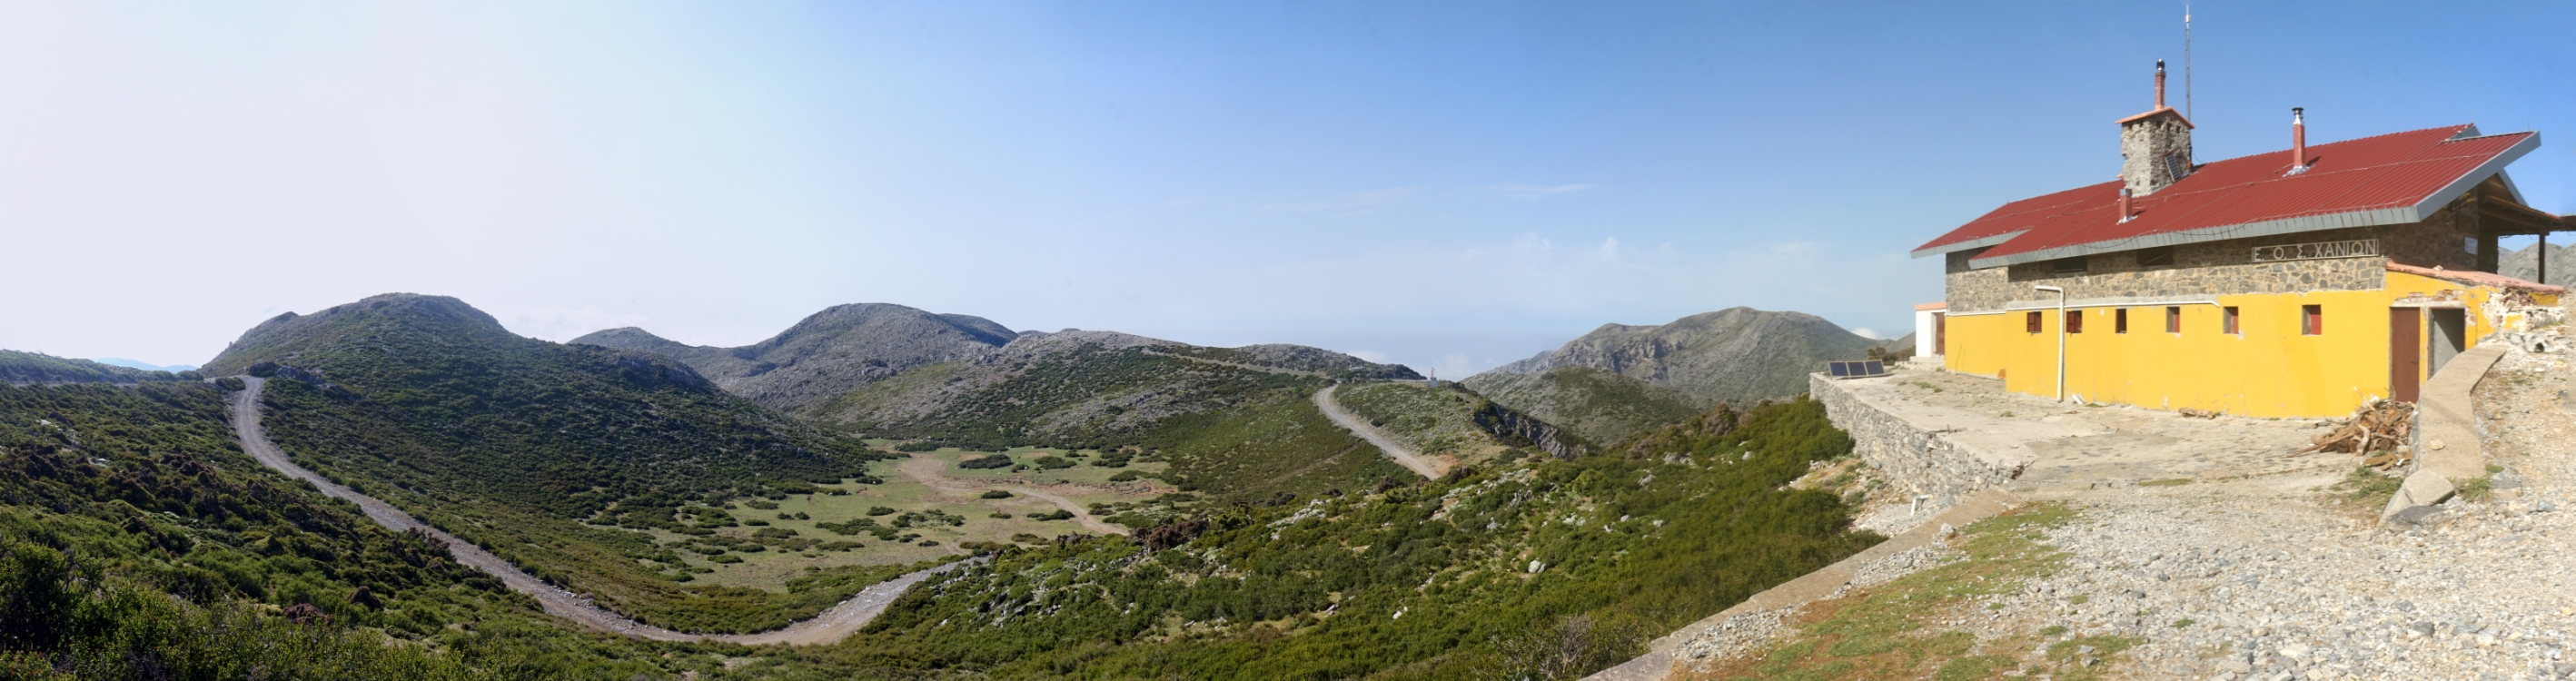 Die Kallergi-Hütte in den Weißen Bergen Kretas.